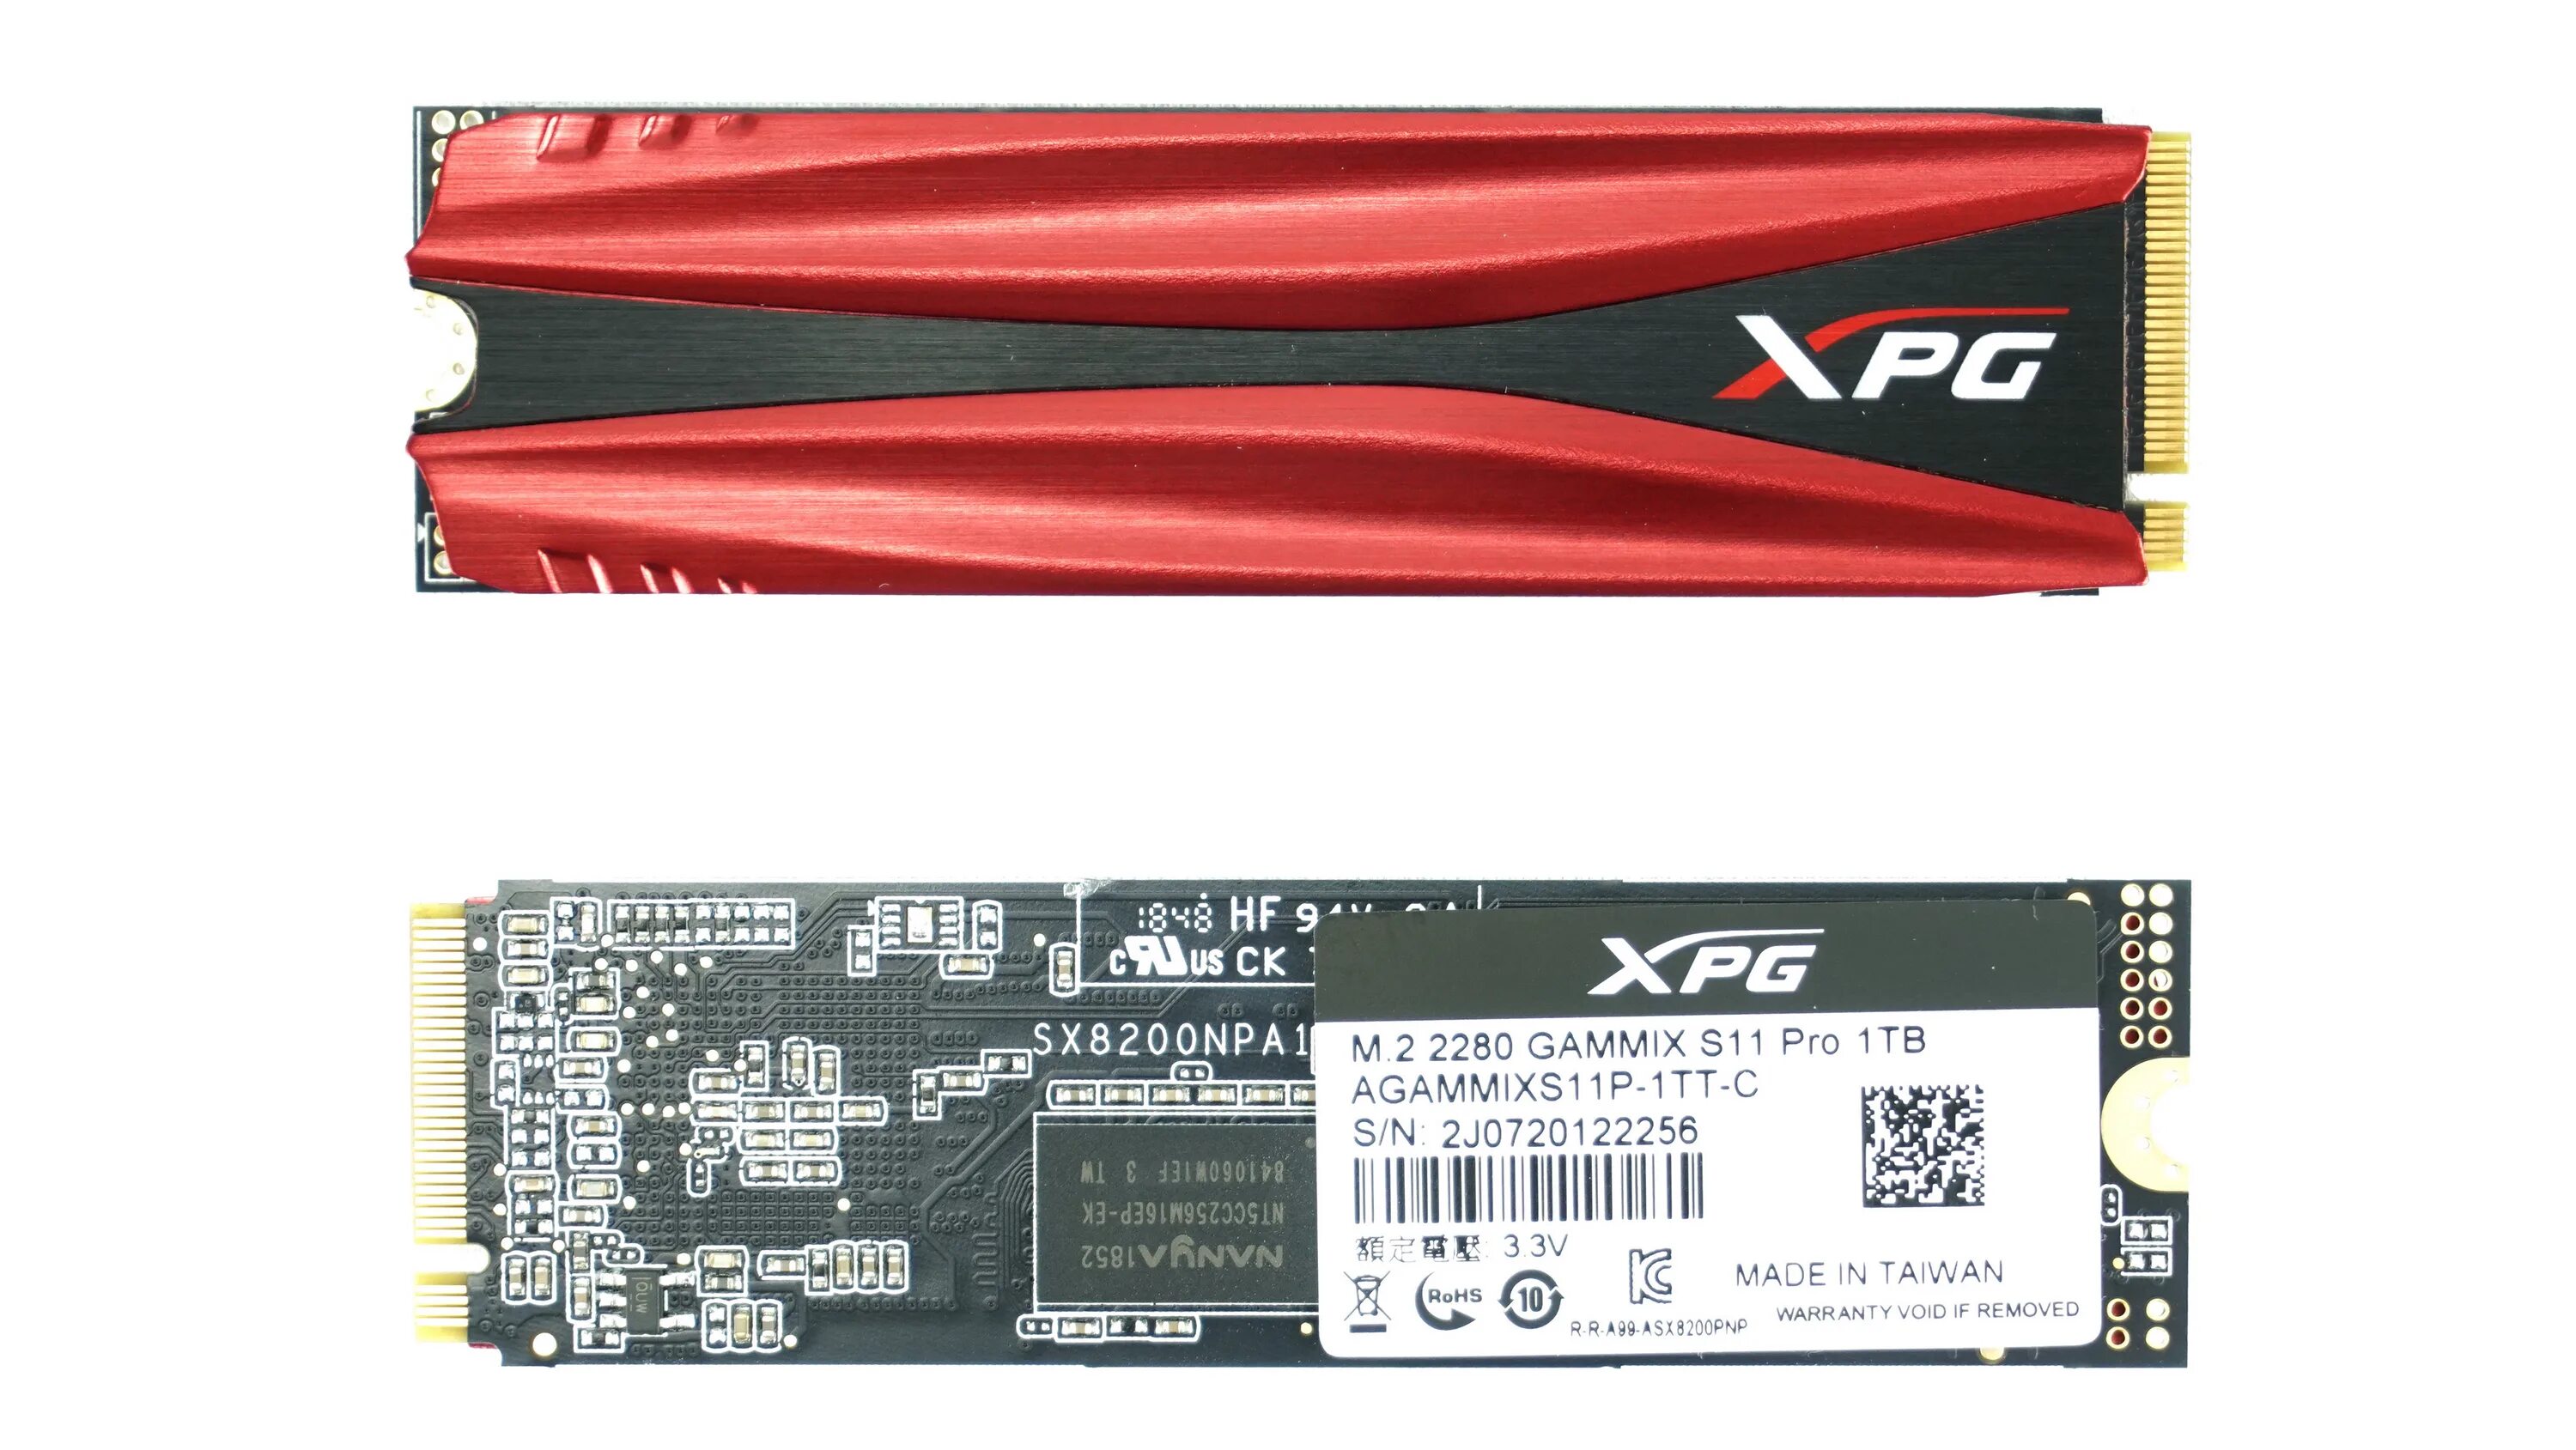 Agammixs11p 1tt c s11 pro. XPG GAMMIX s11 Pro 512gb. 512 ГБ SSD M.2 накопитель ADATA XPG GAMMIX s11 Pro. SSD накопитель a-data s11 Pro agammixs11p-1tt-c 1тб. XPG SSD m2 512.